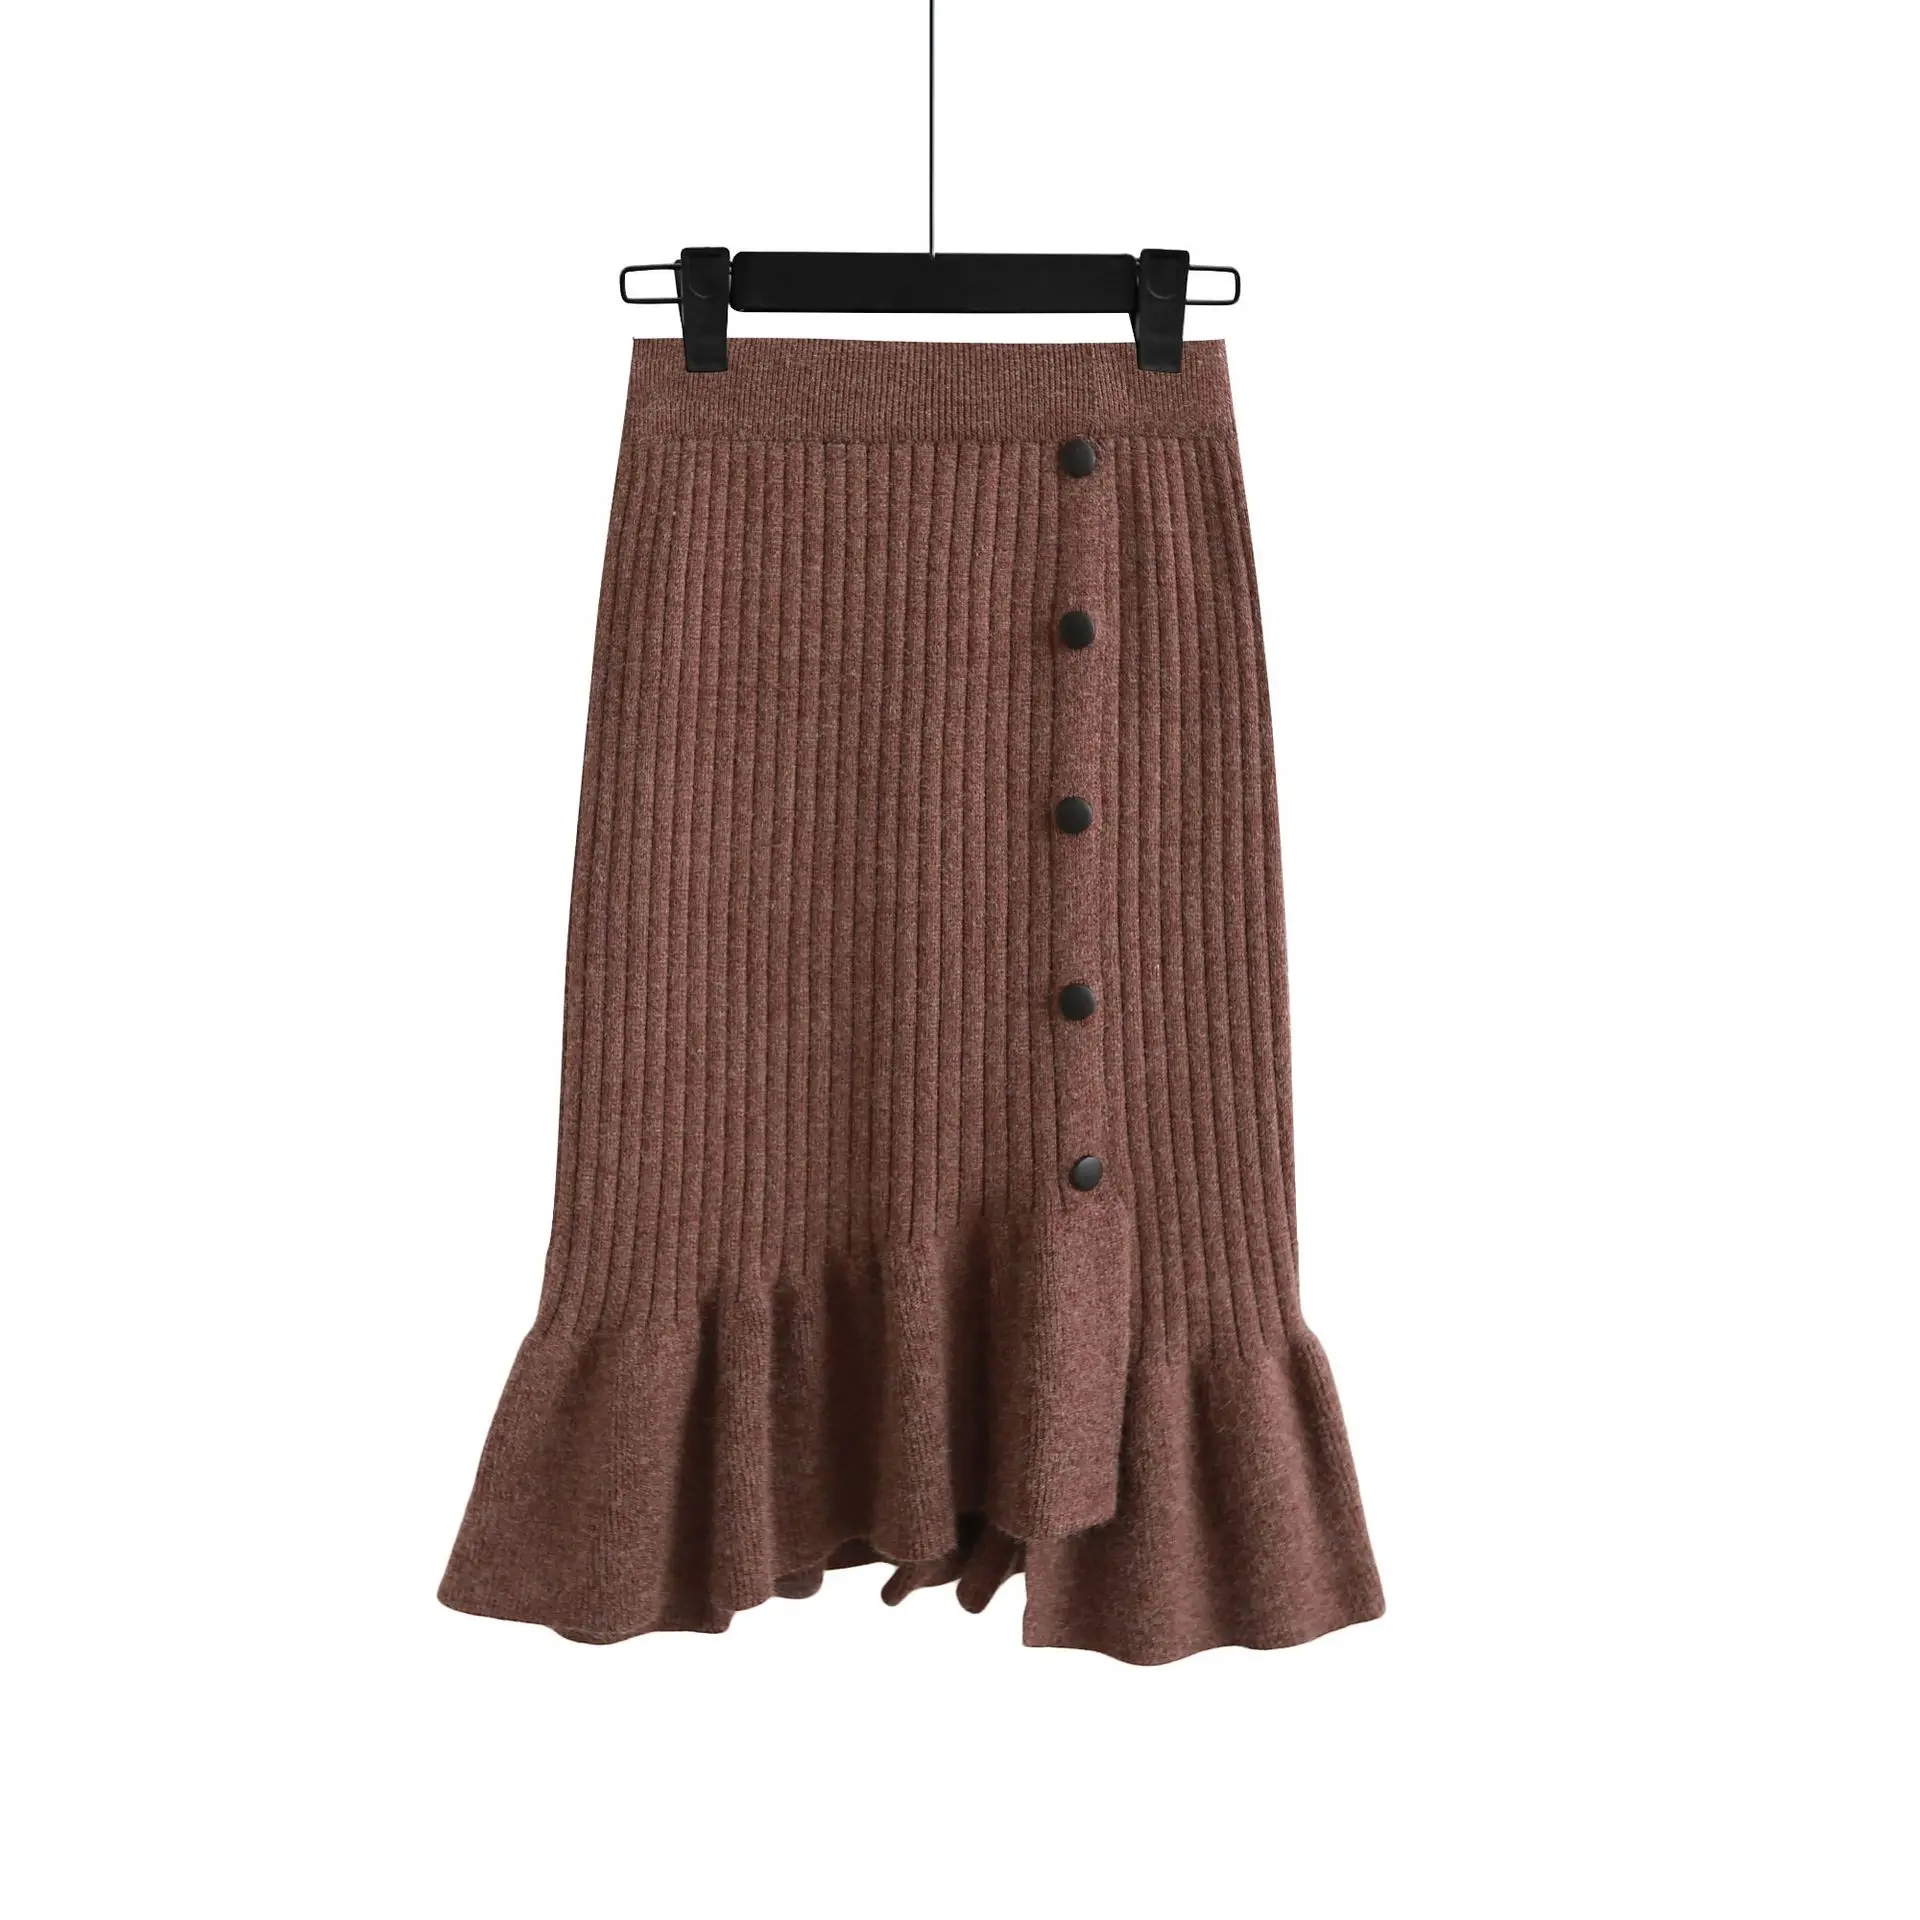 Юбки для девочек Теплые для женщин юбка нерегулярные длинный трикотажный свитер осень 2019 г. новое поступление однотонная Повседневная